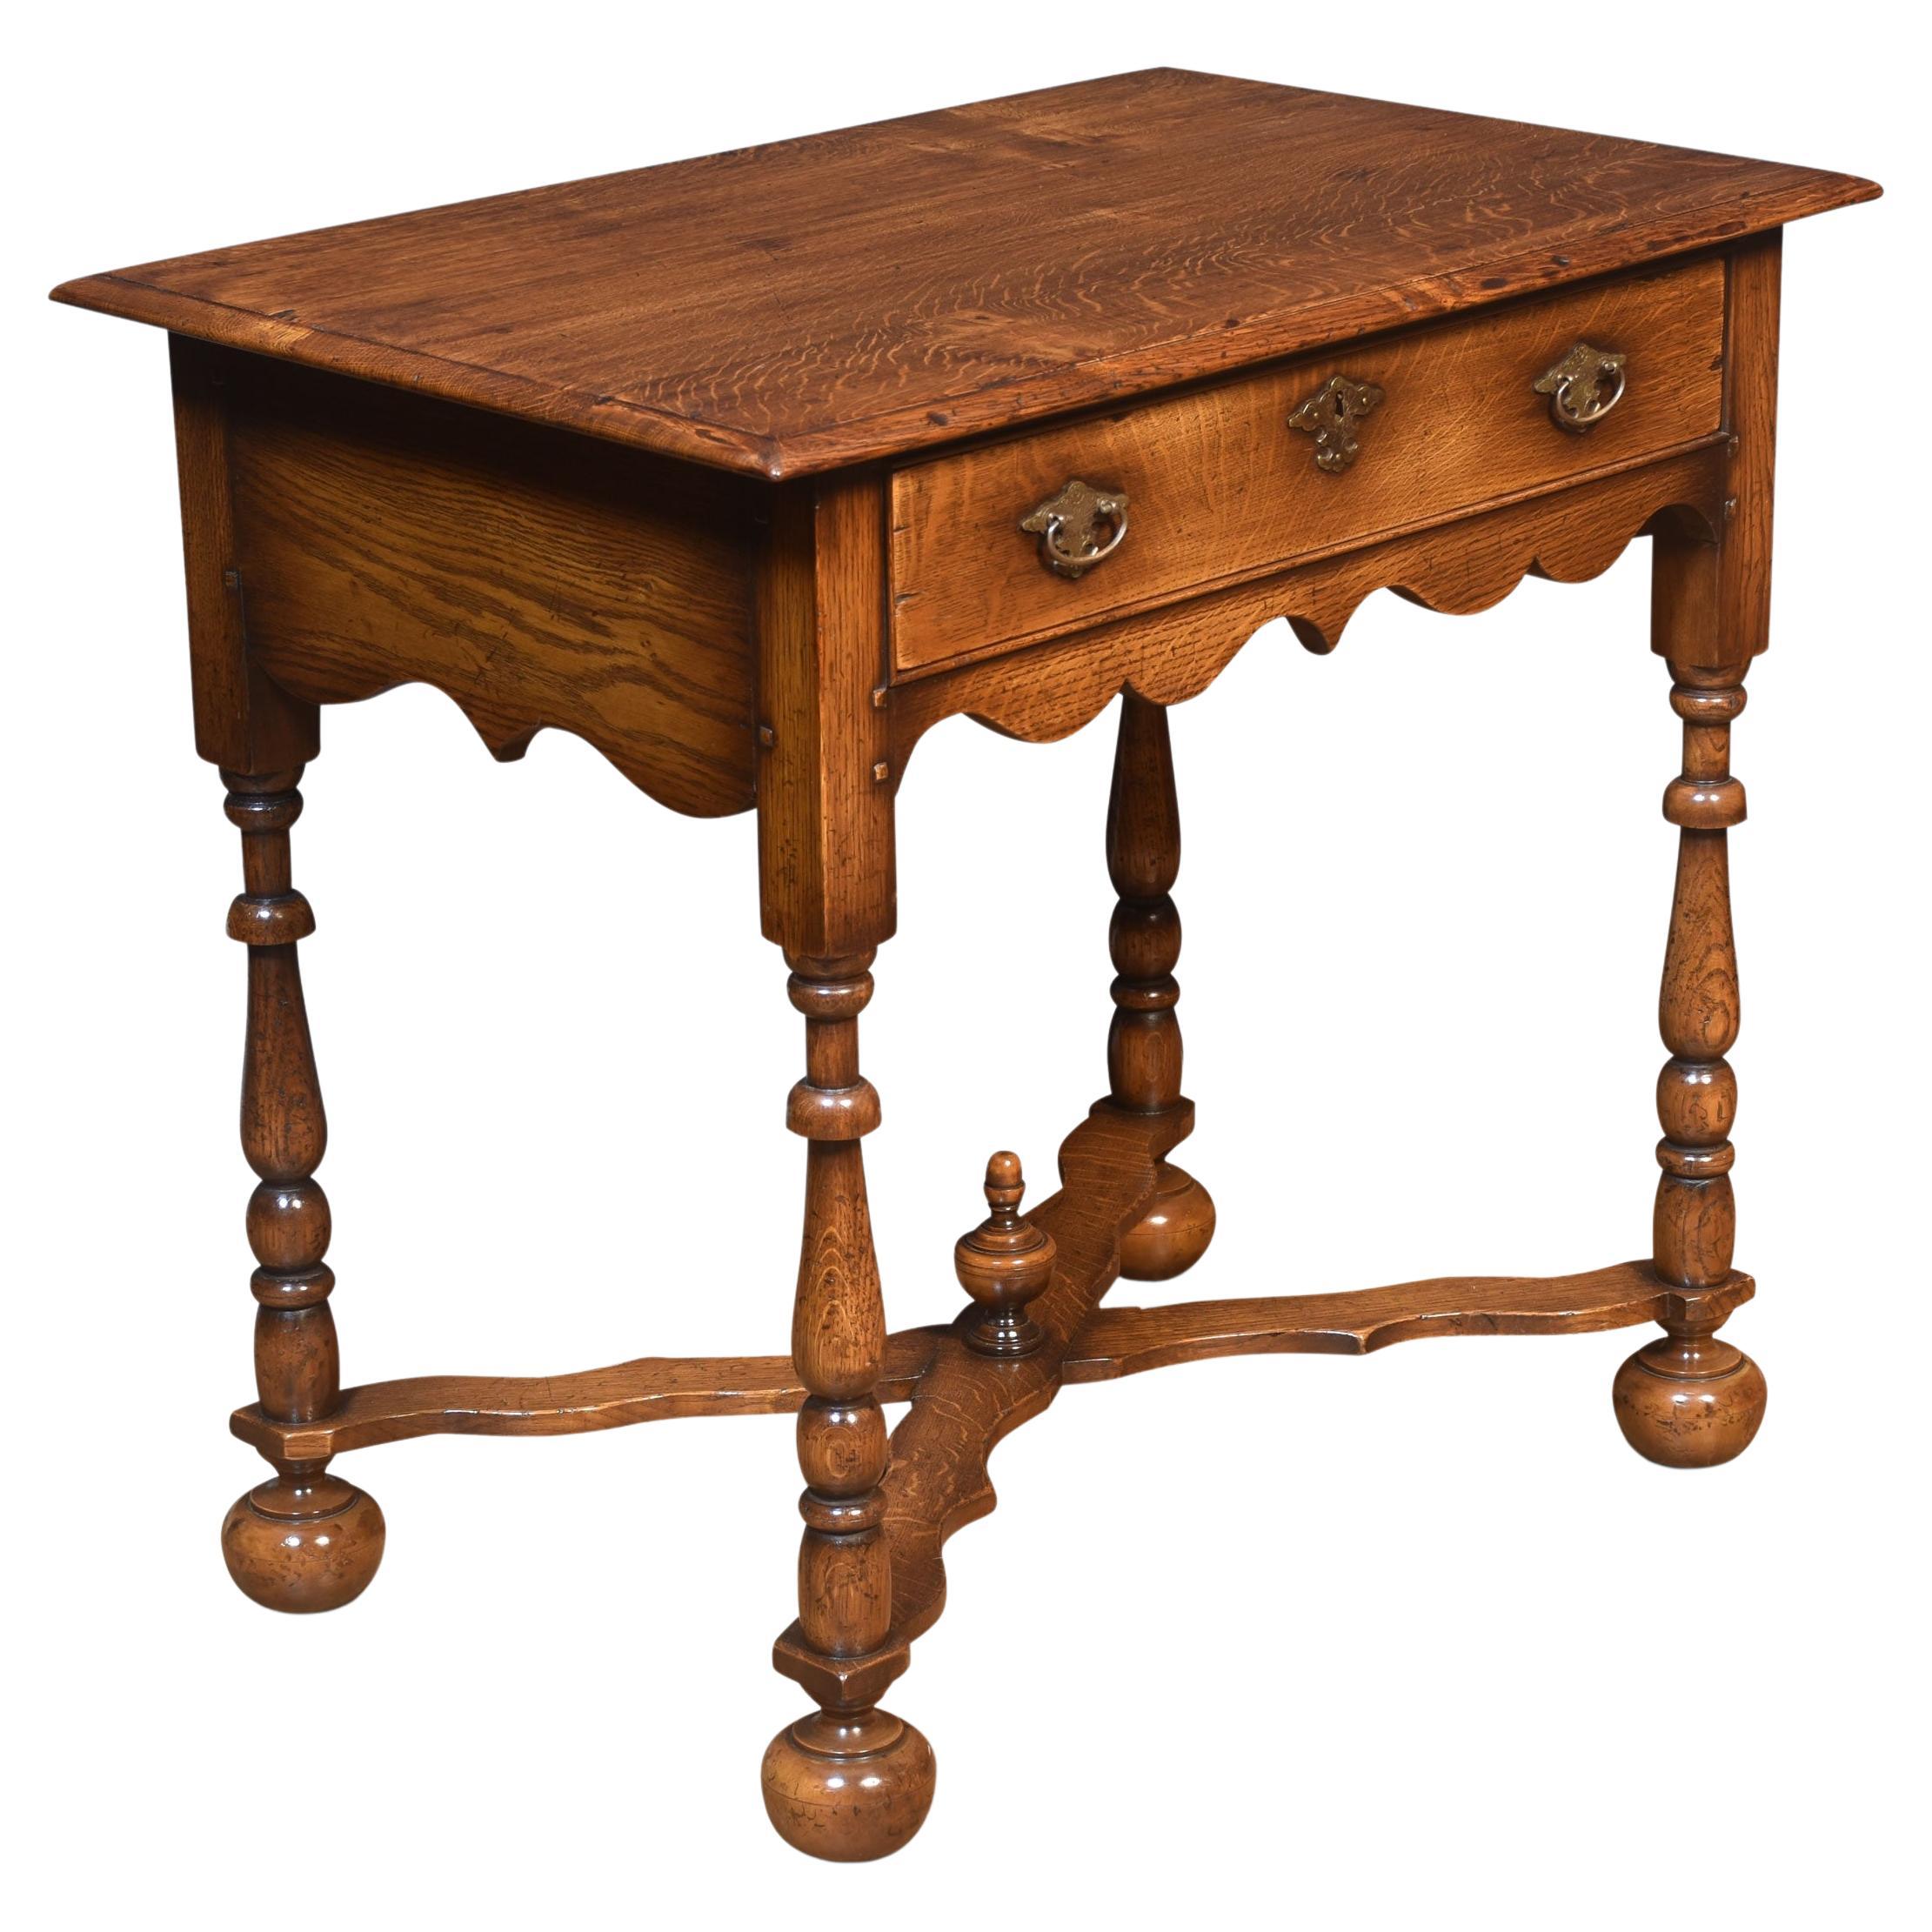 17th century style oak side table